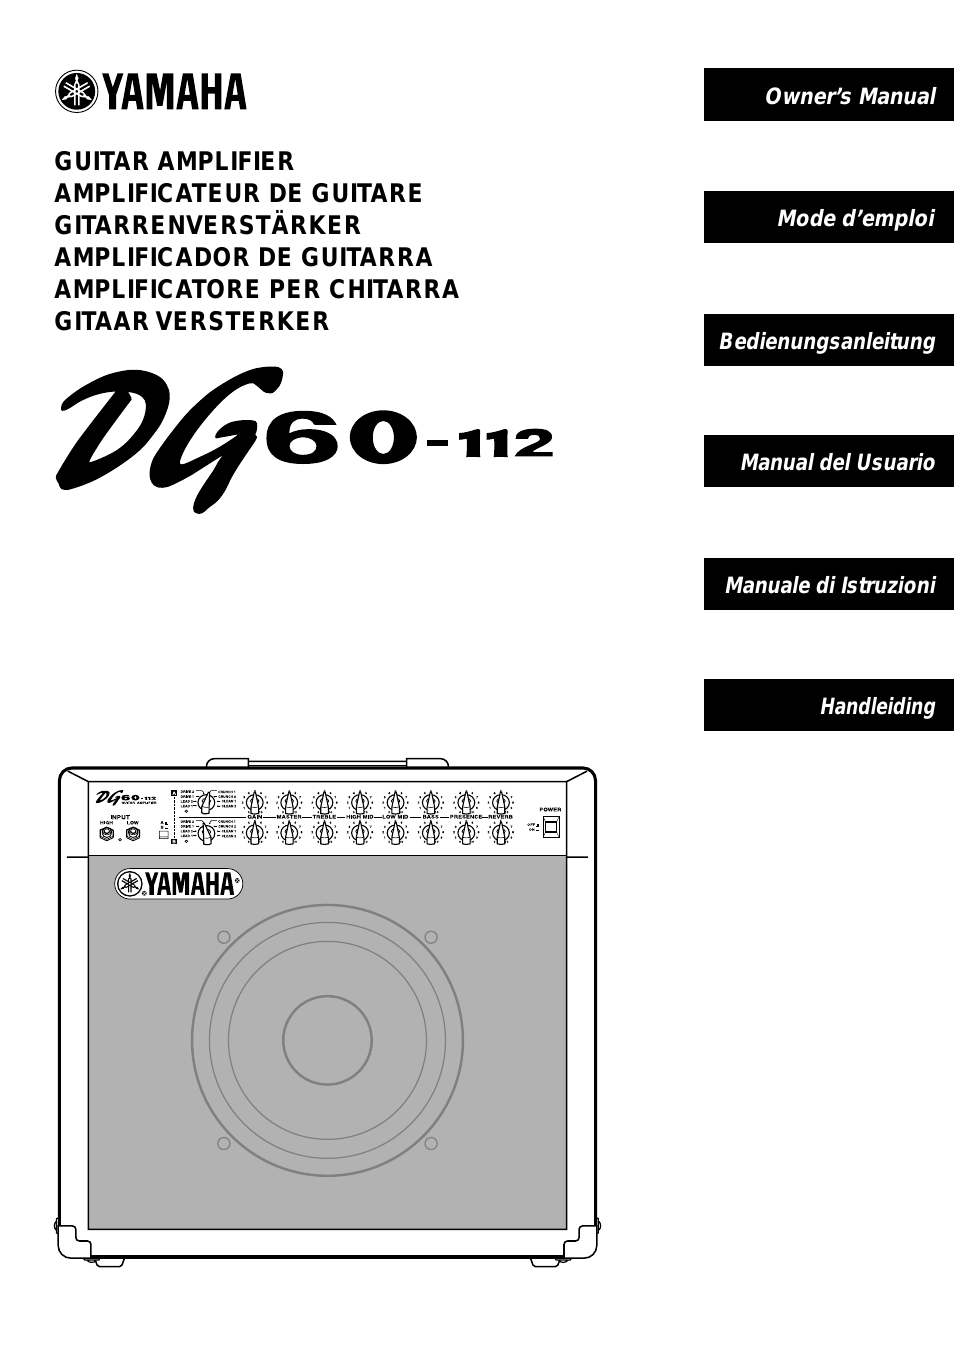 DG60-112